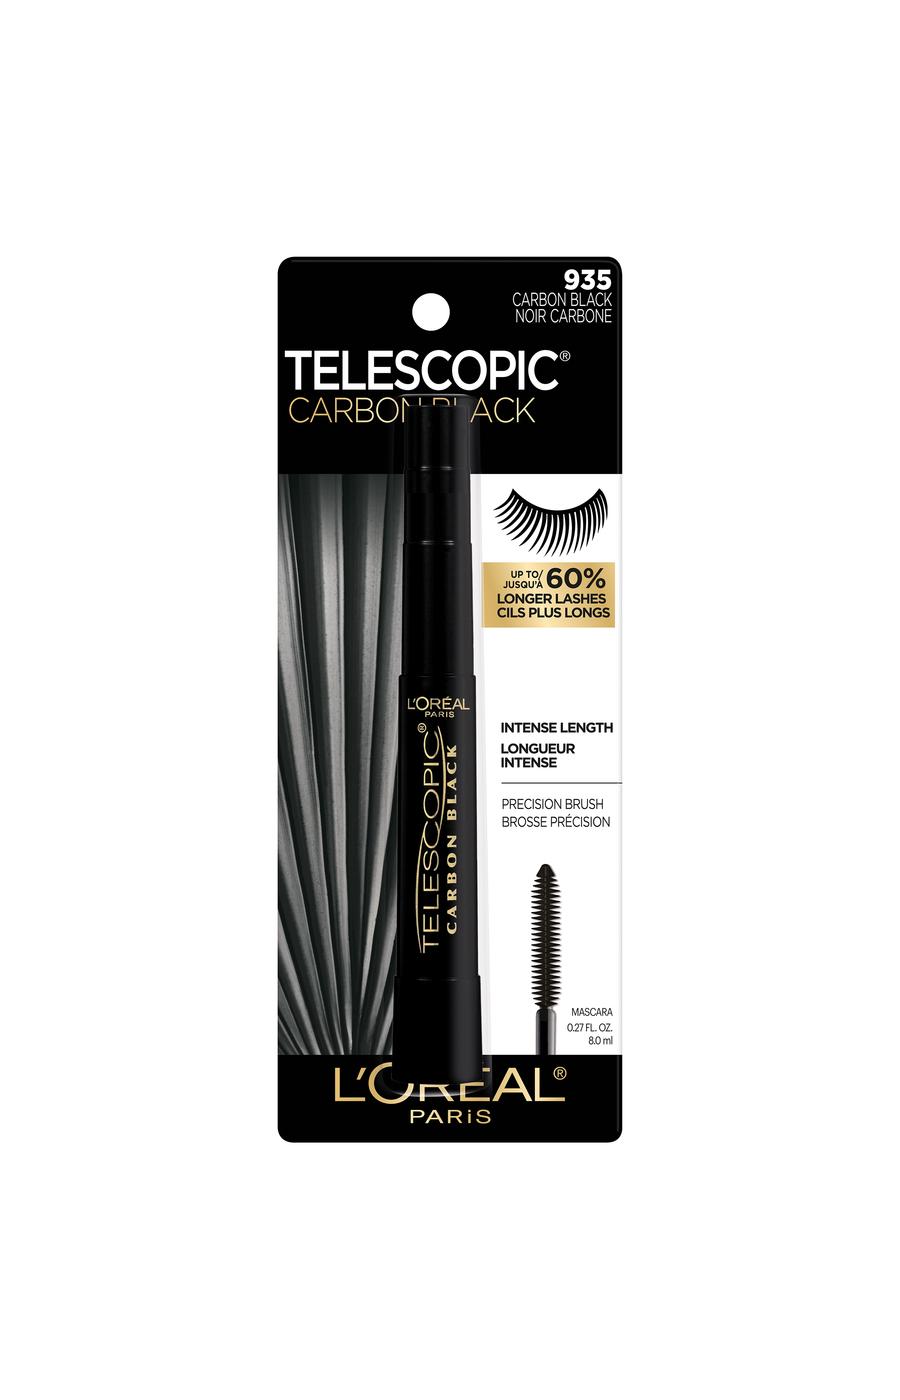 L'Oréal Paris Telescopic Original Washable Intense Lengthening Mascara - Carbon Black; image 1 of 6